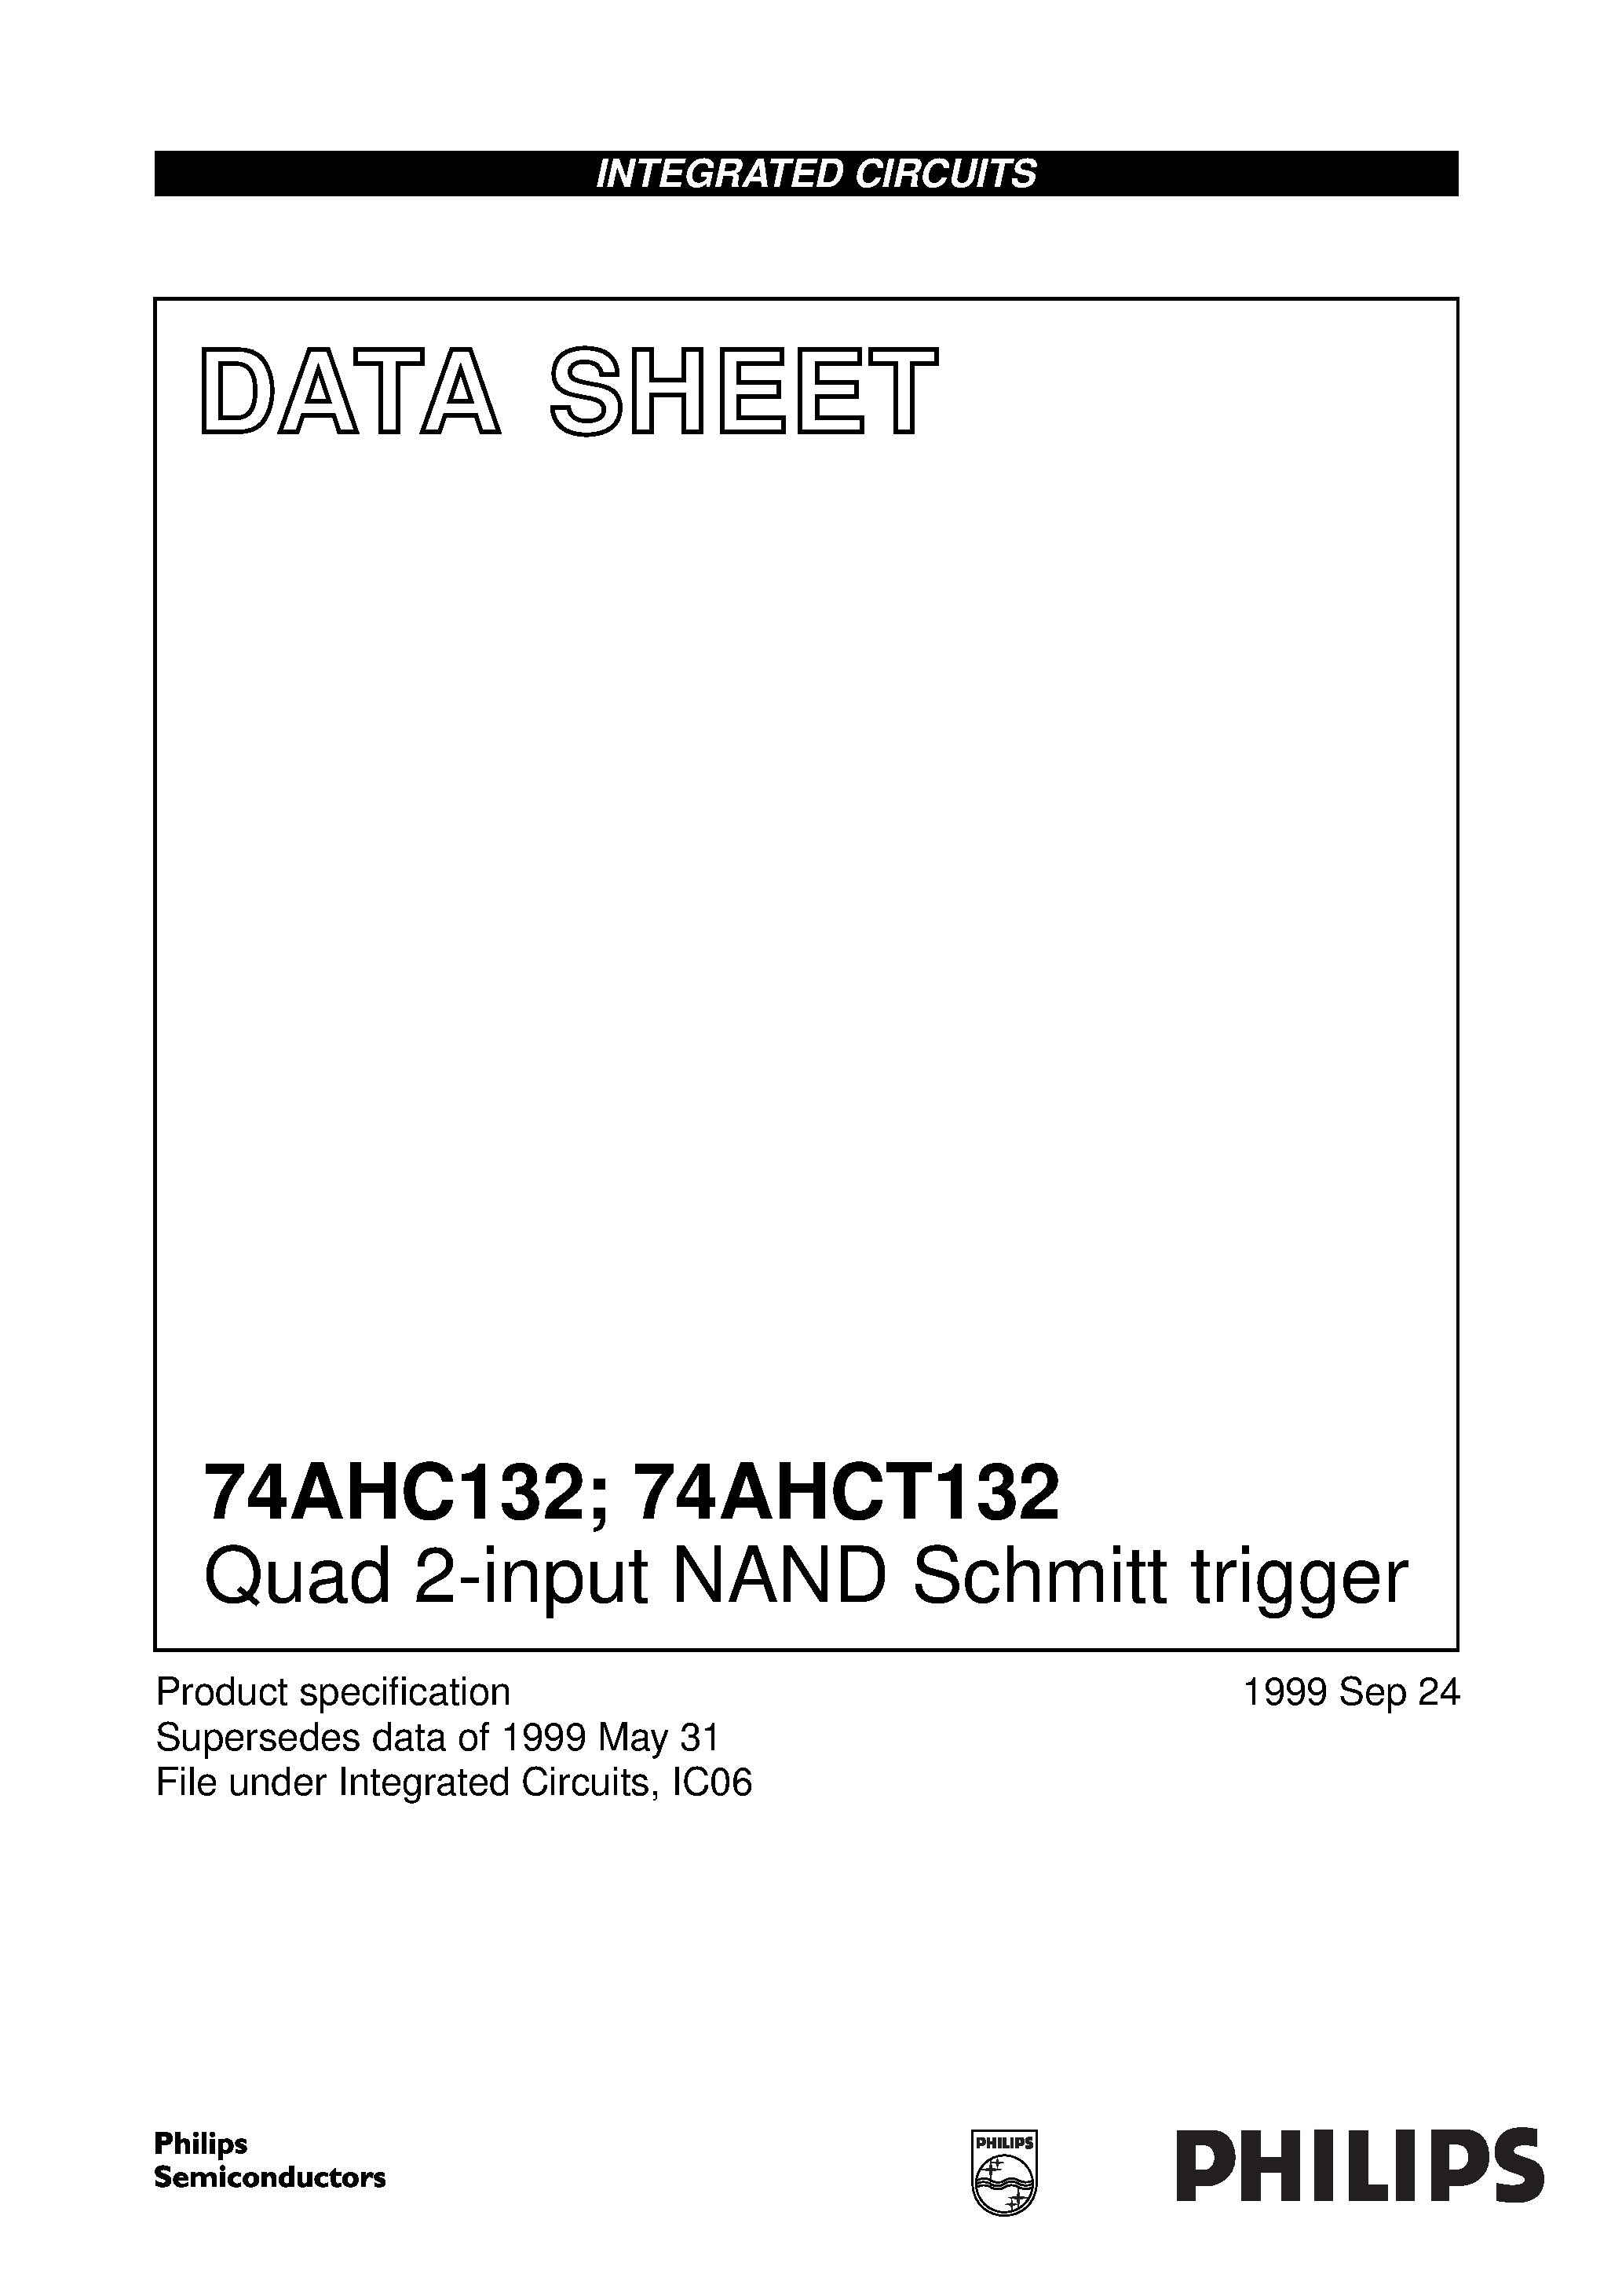 Даташит 74AHC132PW - Quad 2-input NAND Schmitt trigger страница 1